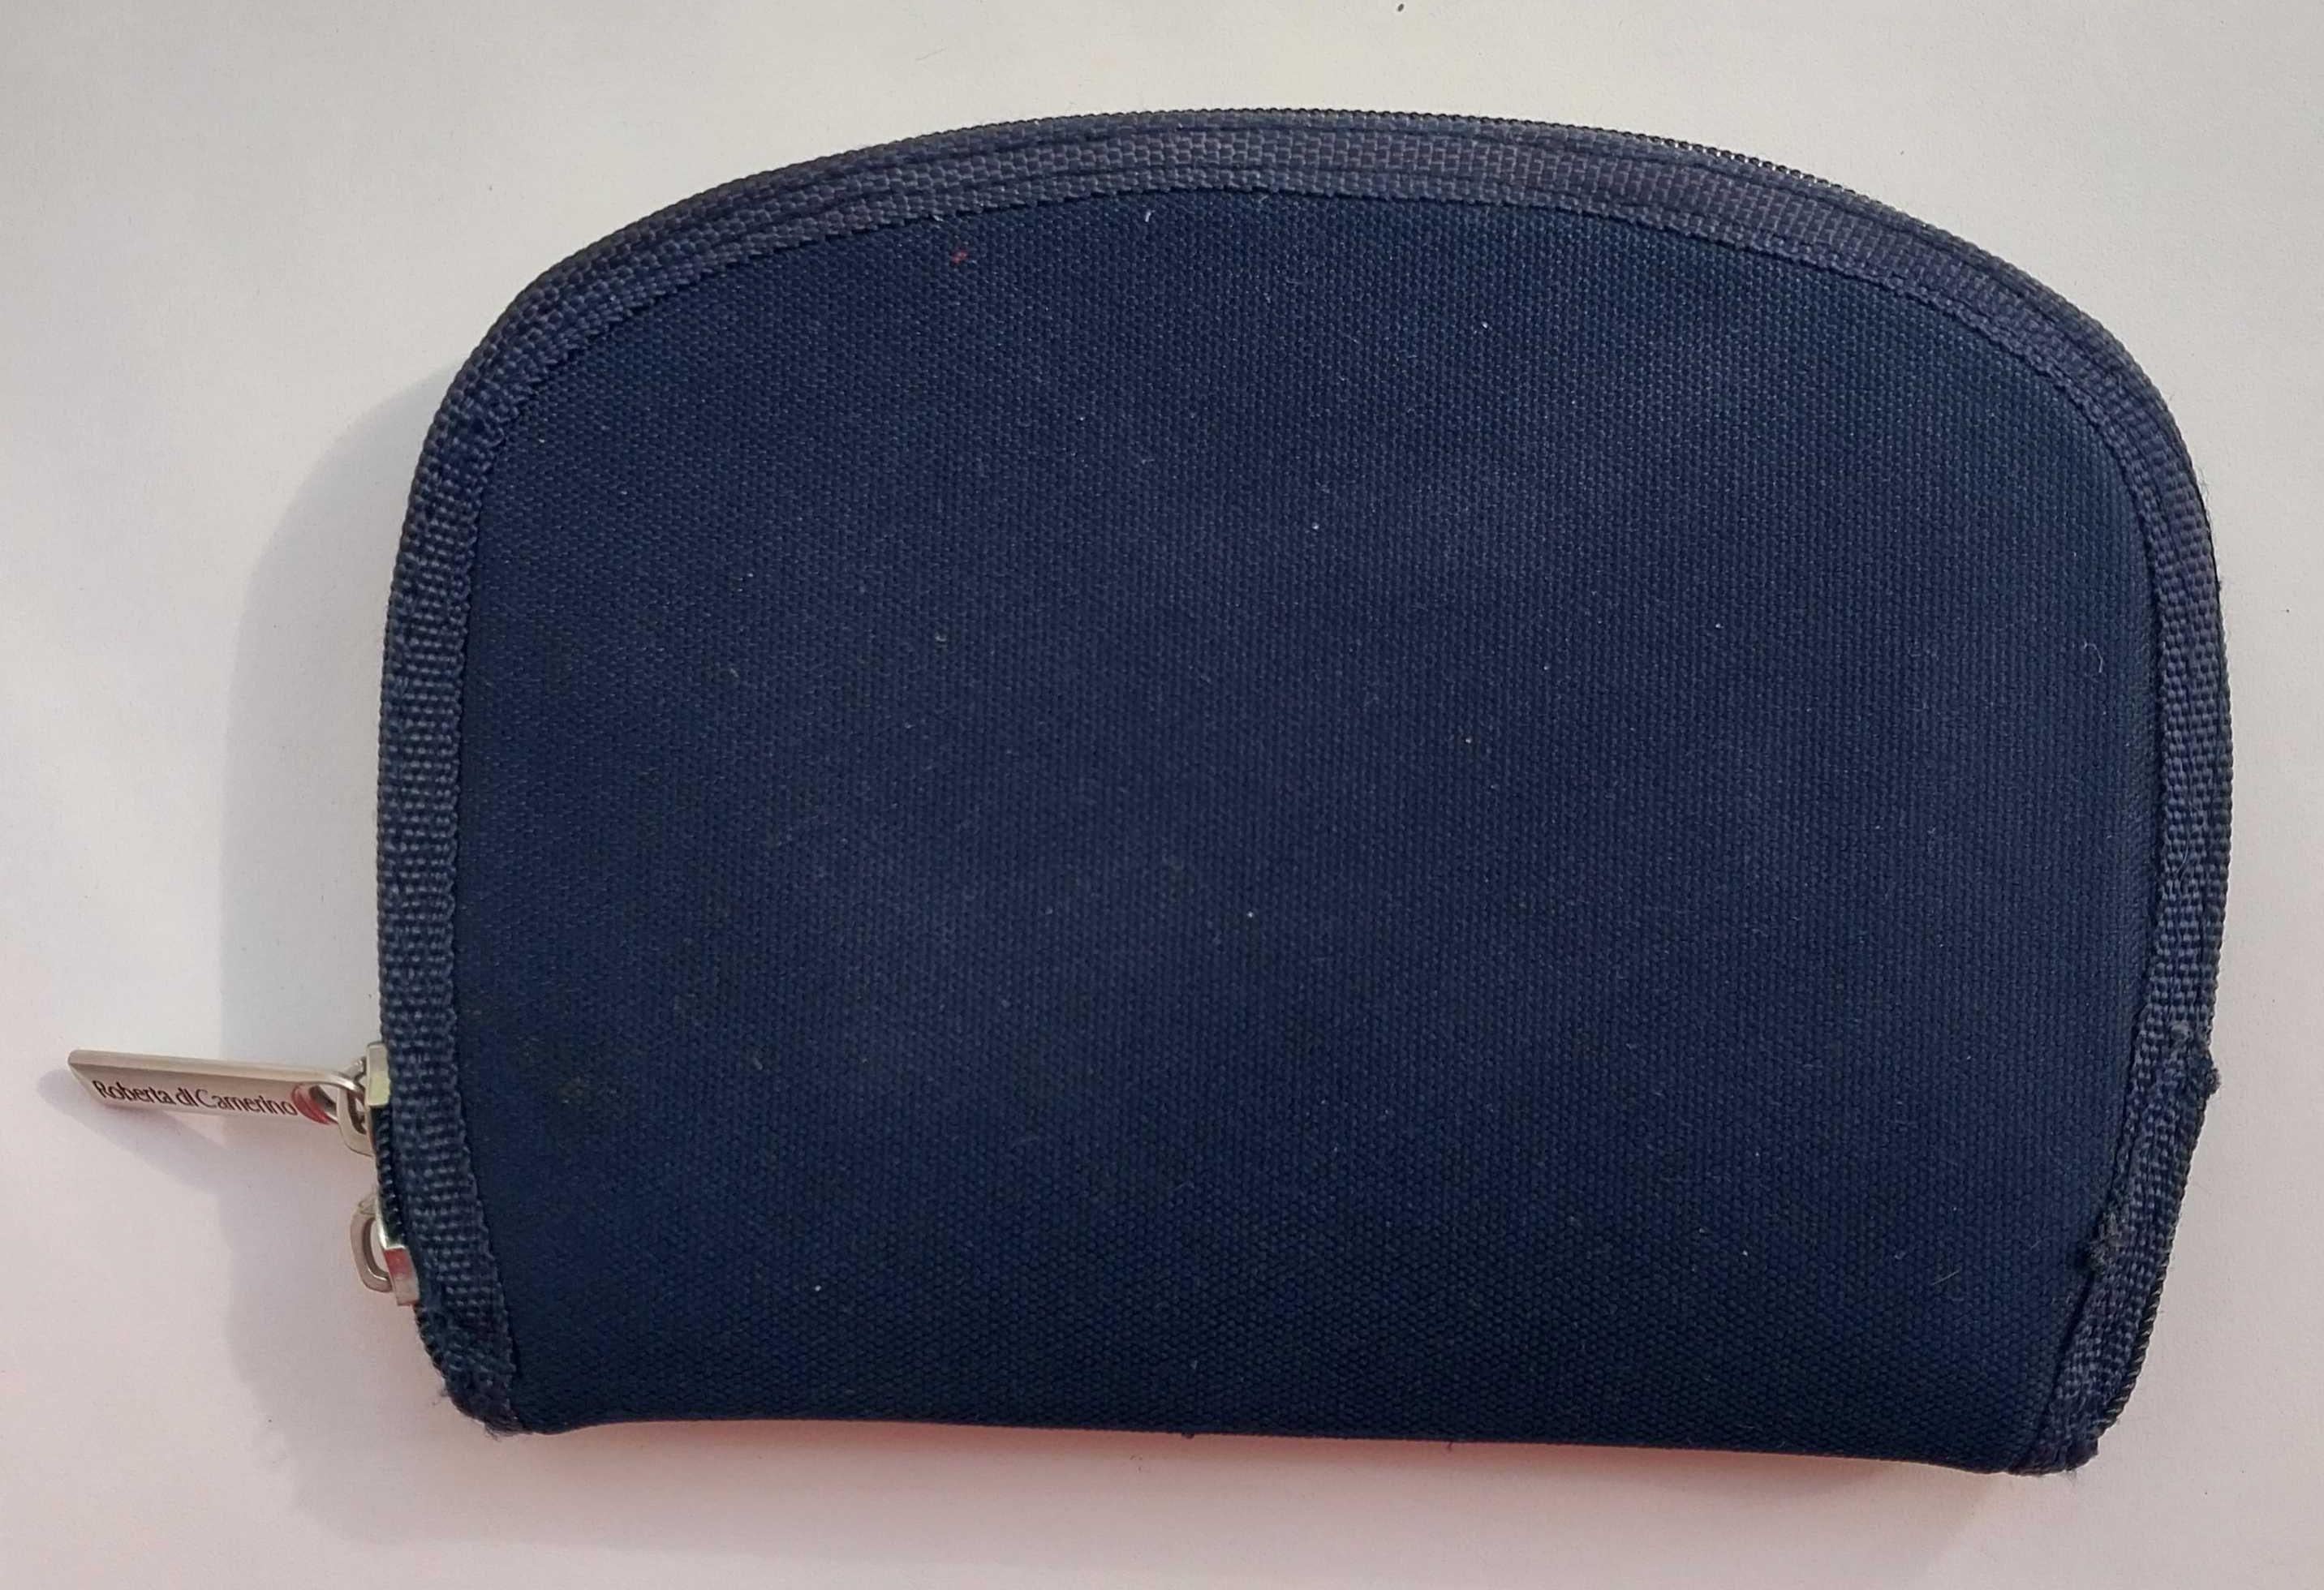 Roberta di Camerino Италия сумочка барсетка с замком-молнией синяя